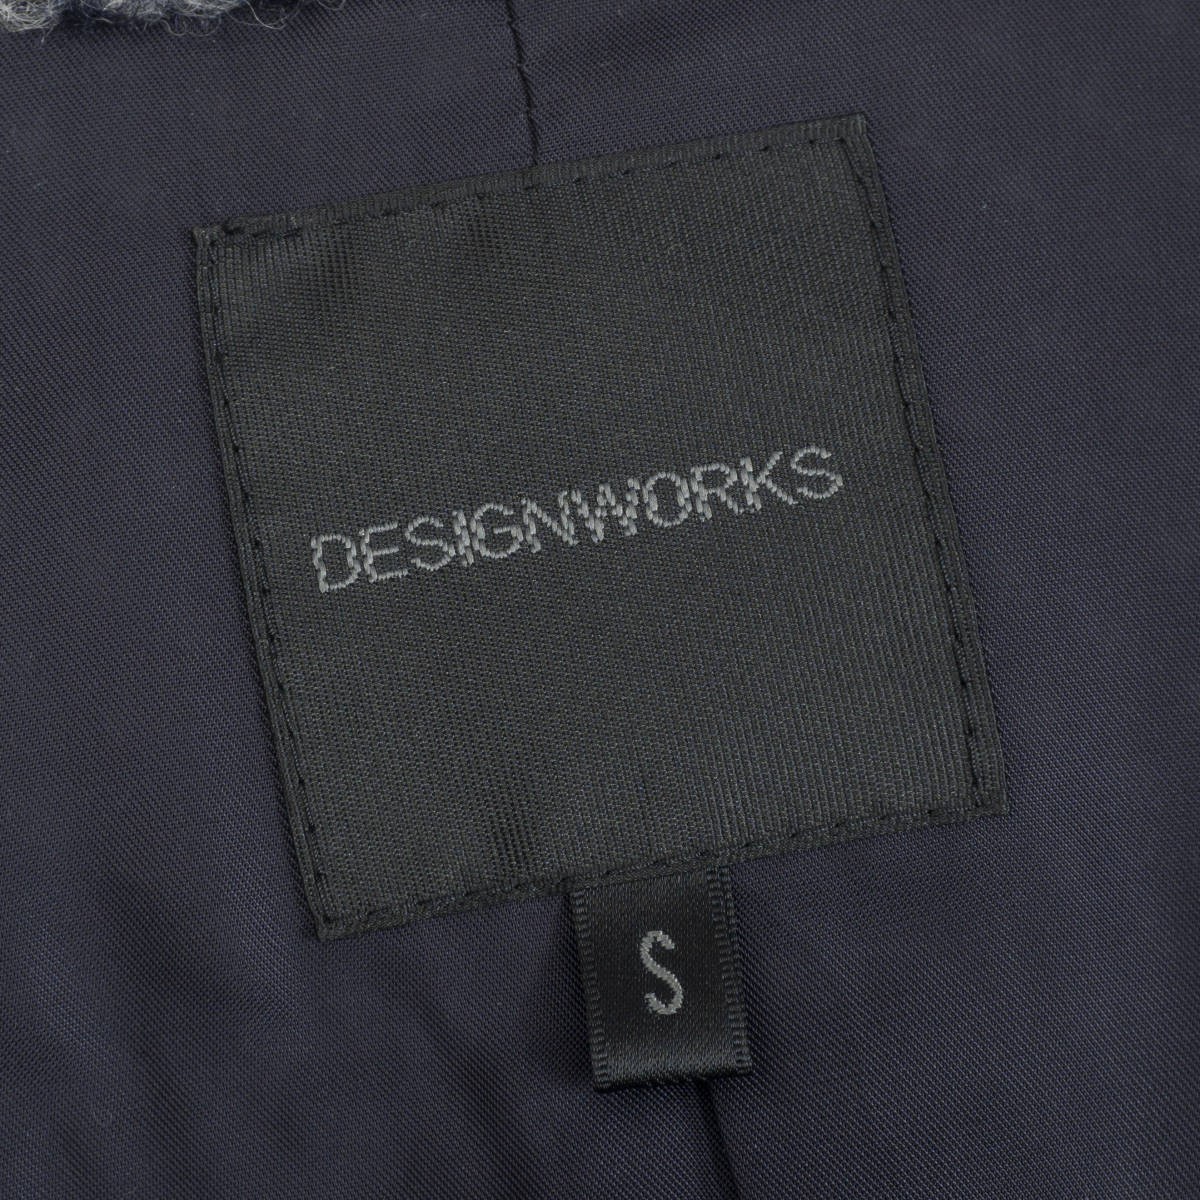 極上フランネルジャケット『DESIGN WORKS』Sサイズ ネイビー 日本製 アバハウス デザインワークス メンズ 管理10131_画像6